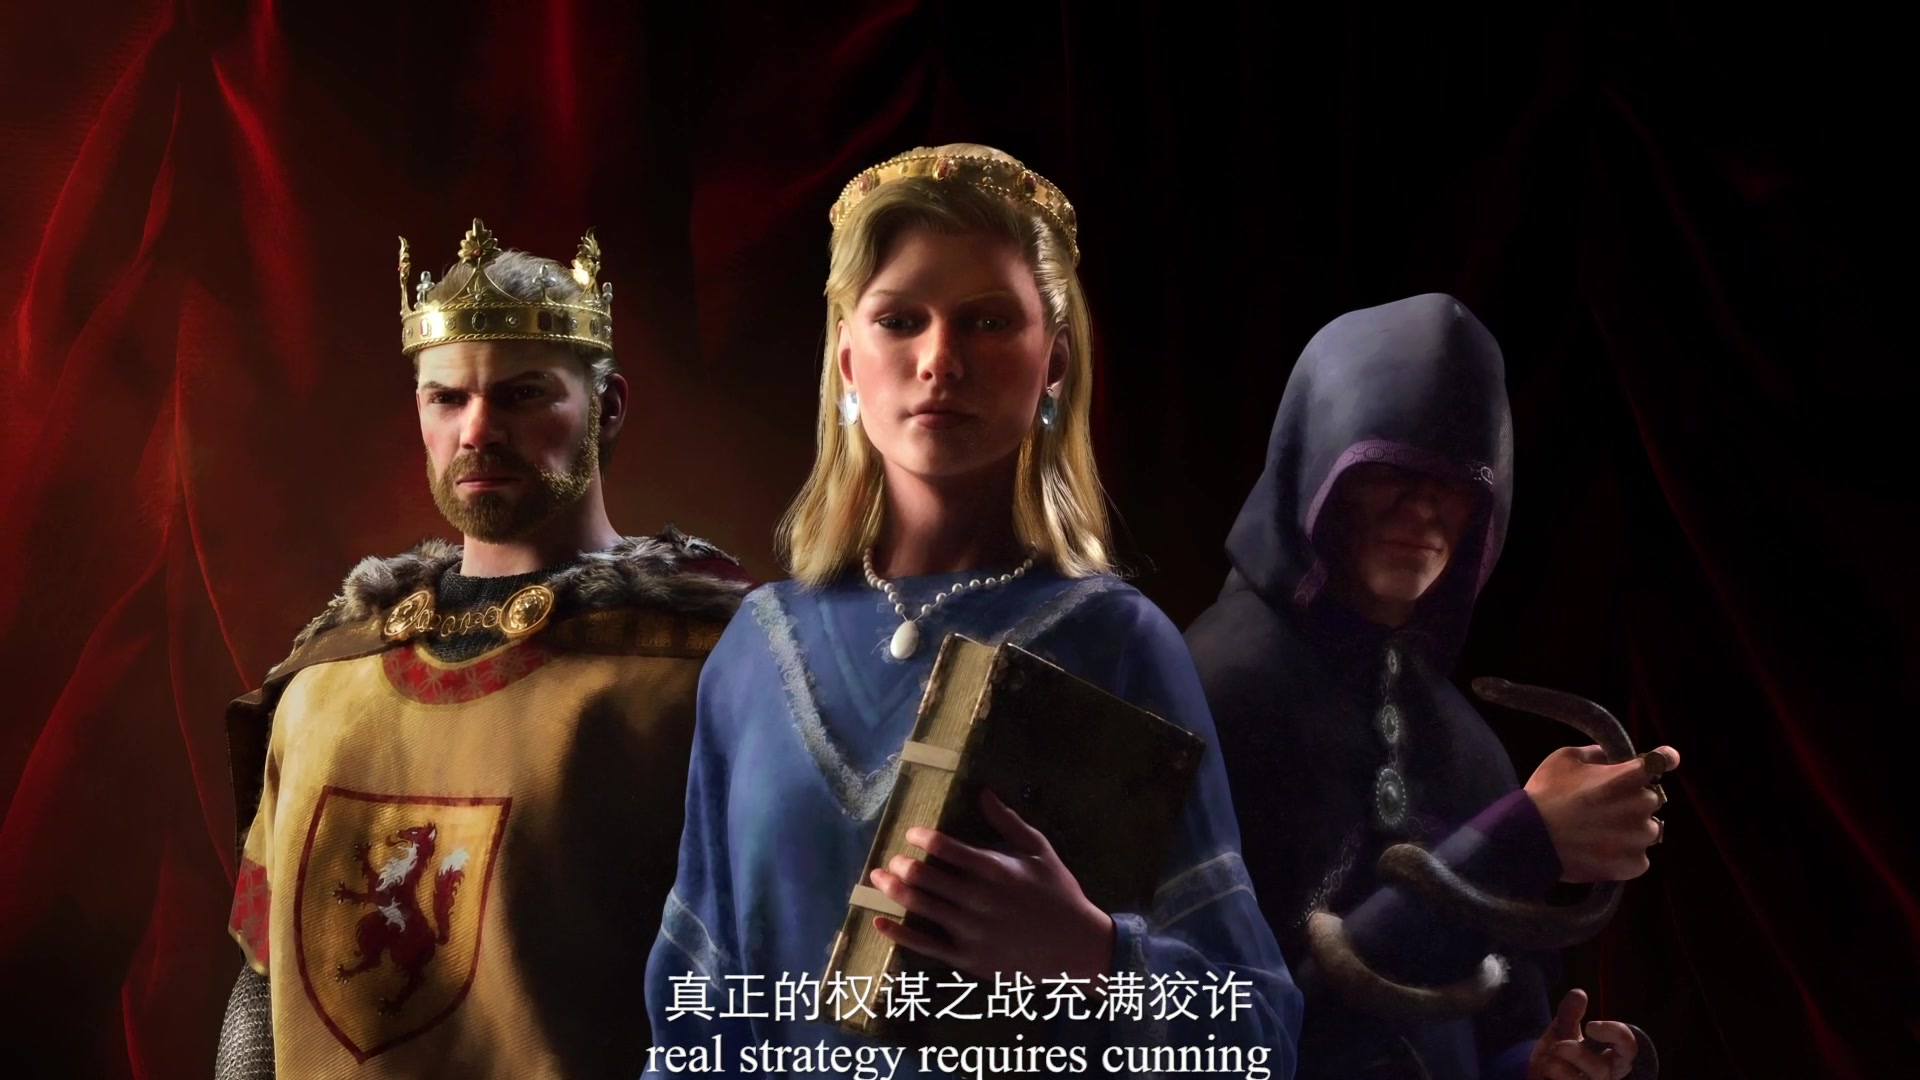 《十字軍之王3》官方中文預告片公布 IGN滿分之作